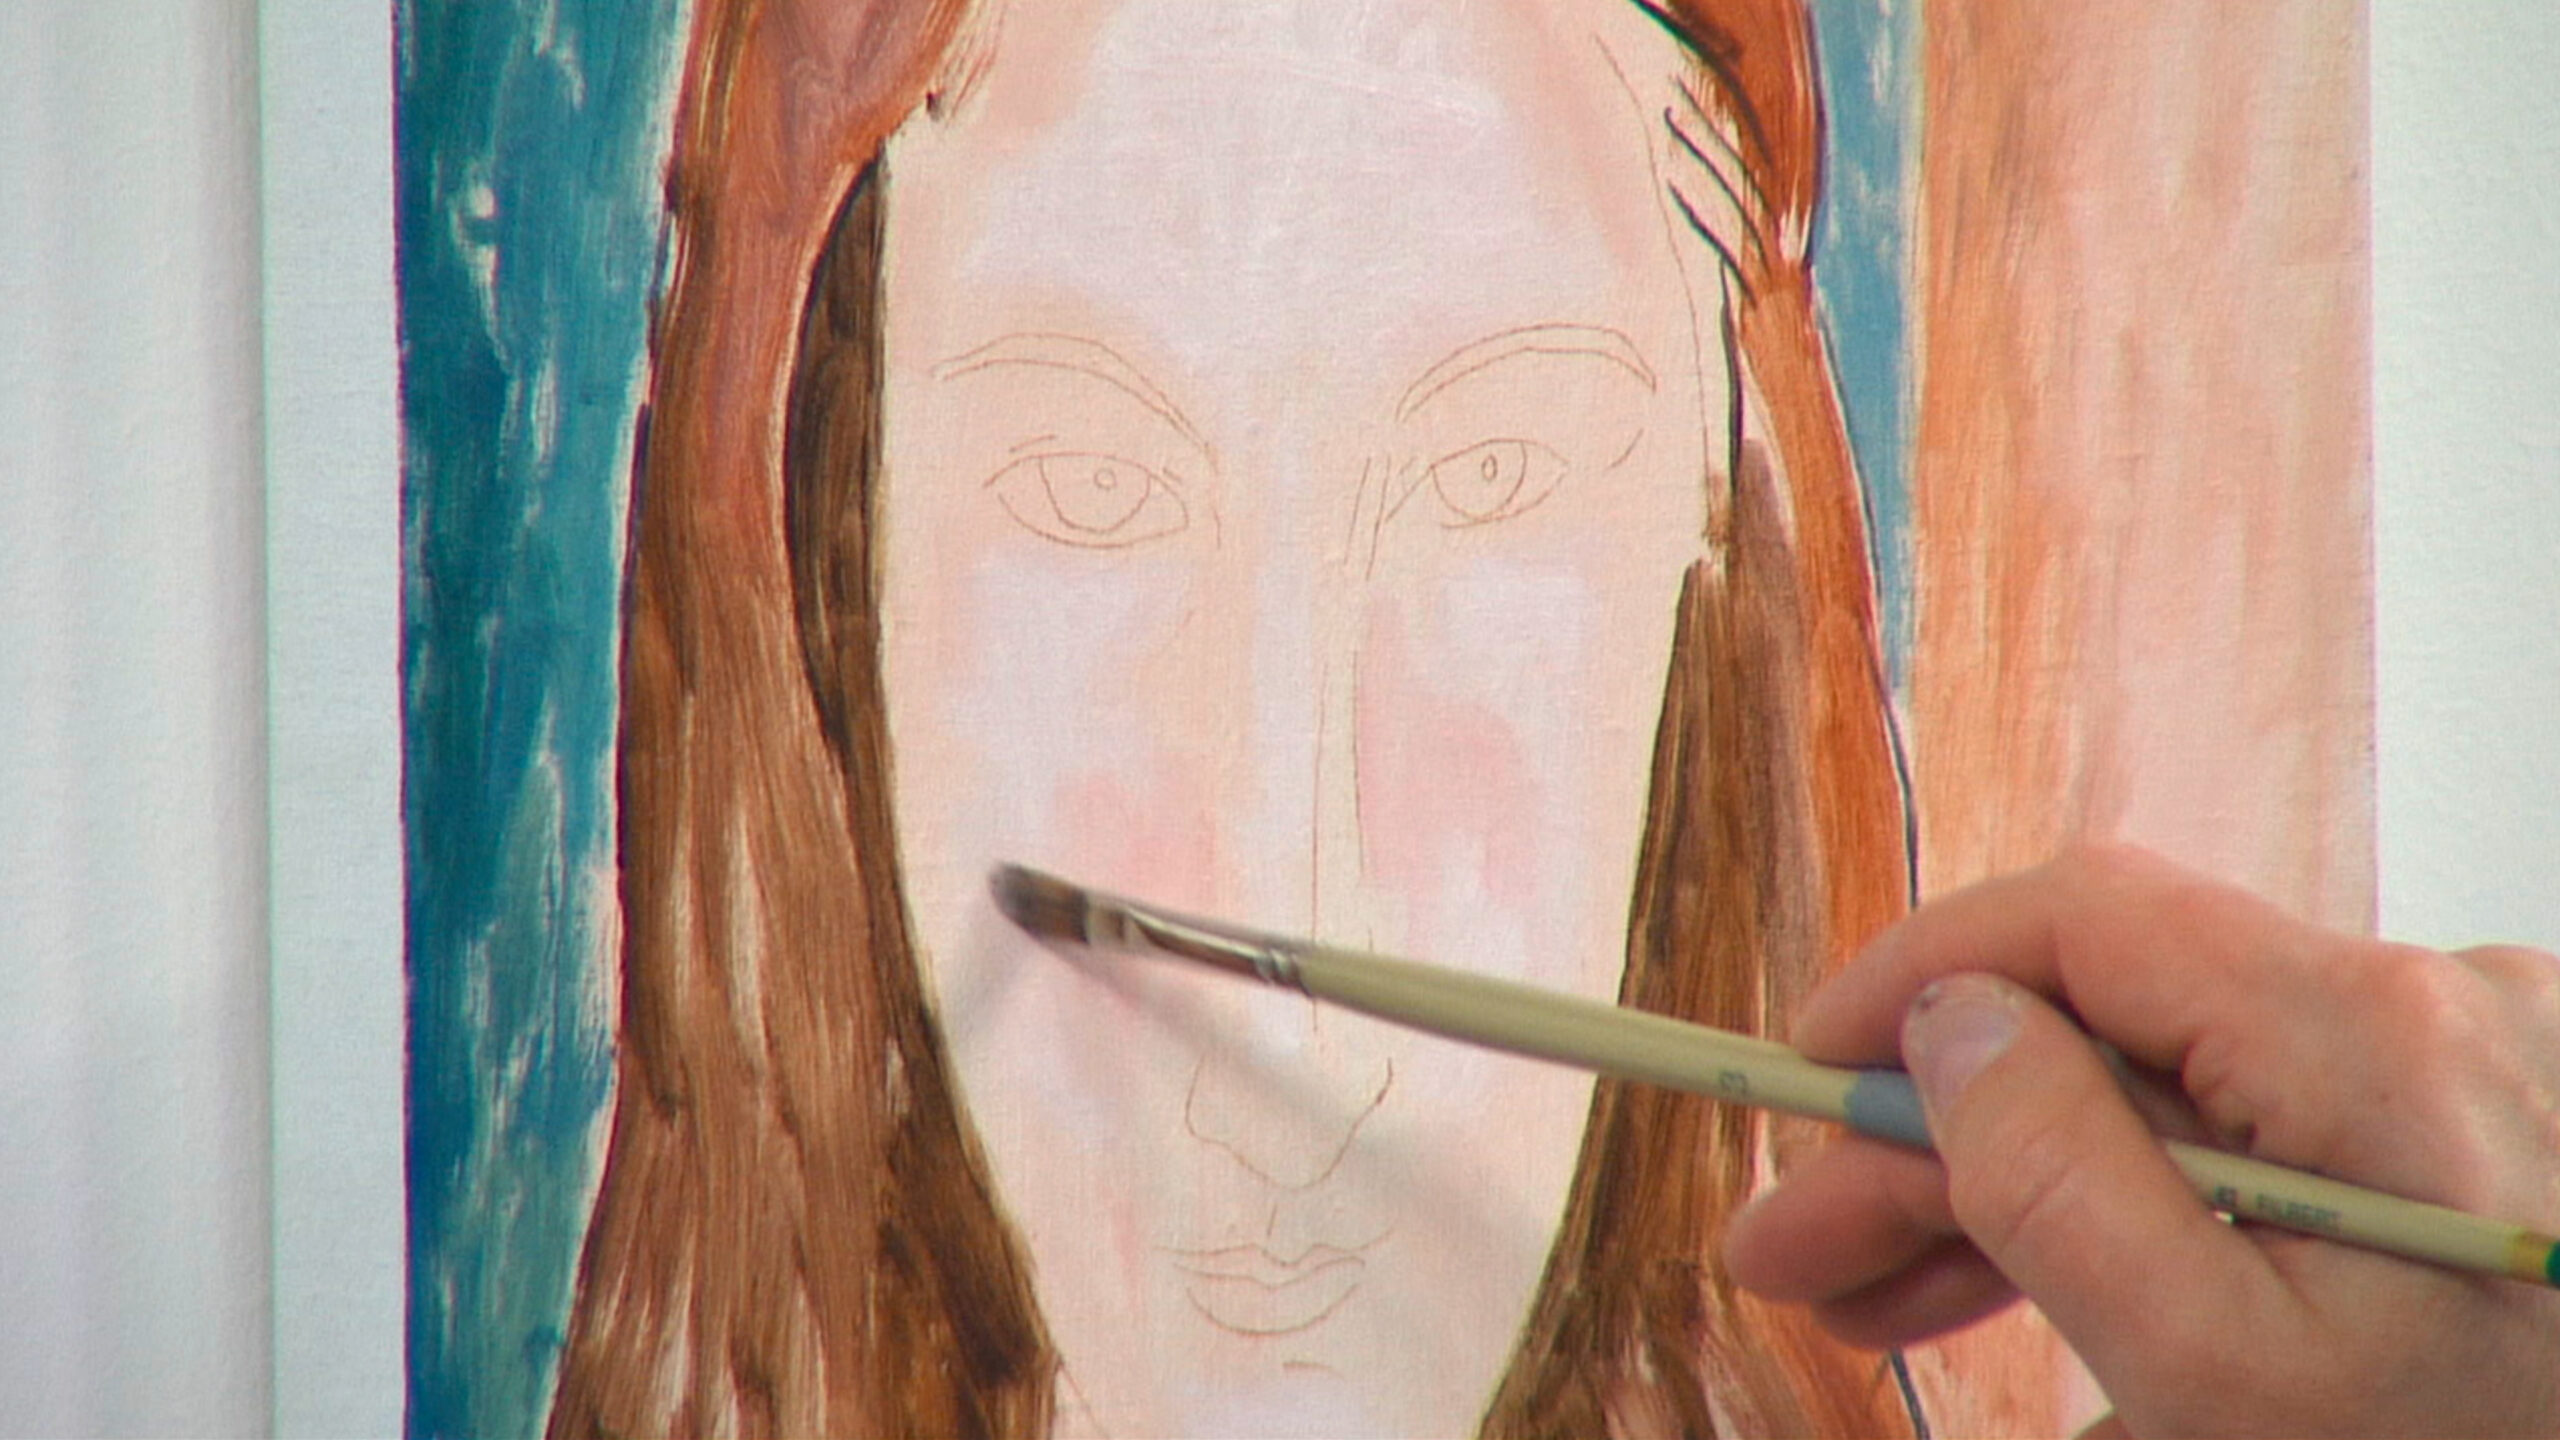 Episode 28: Project: A Modigliani Portrait